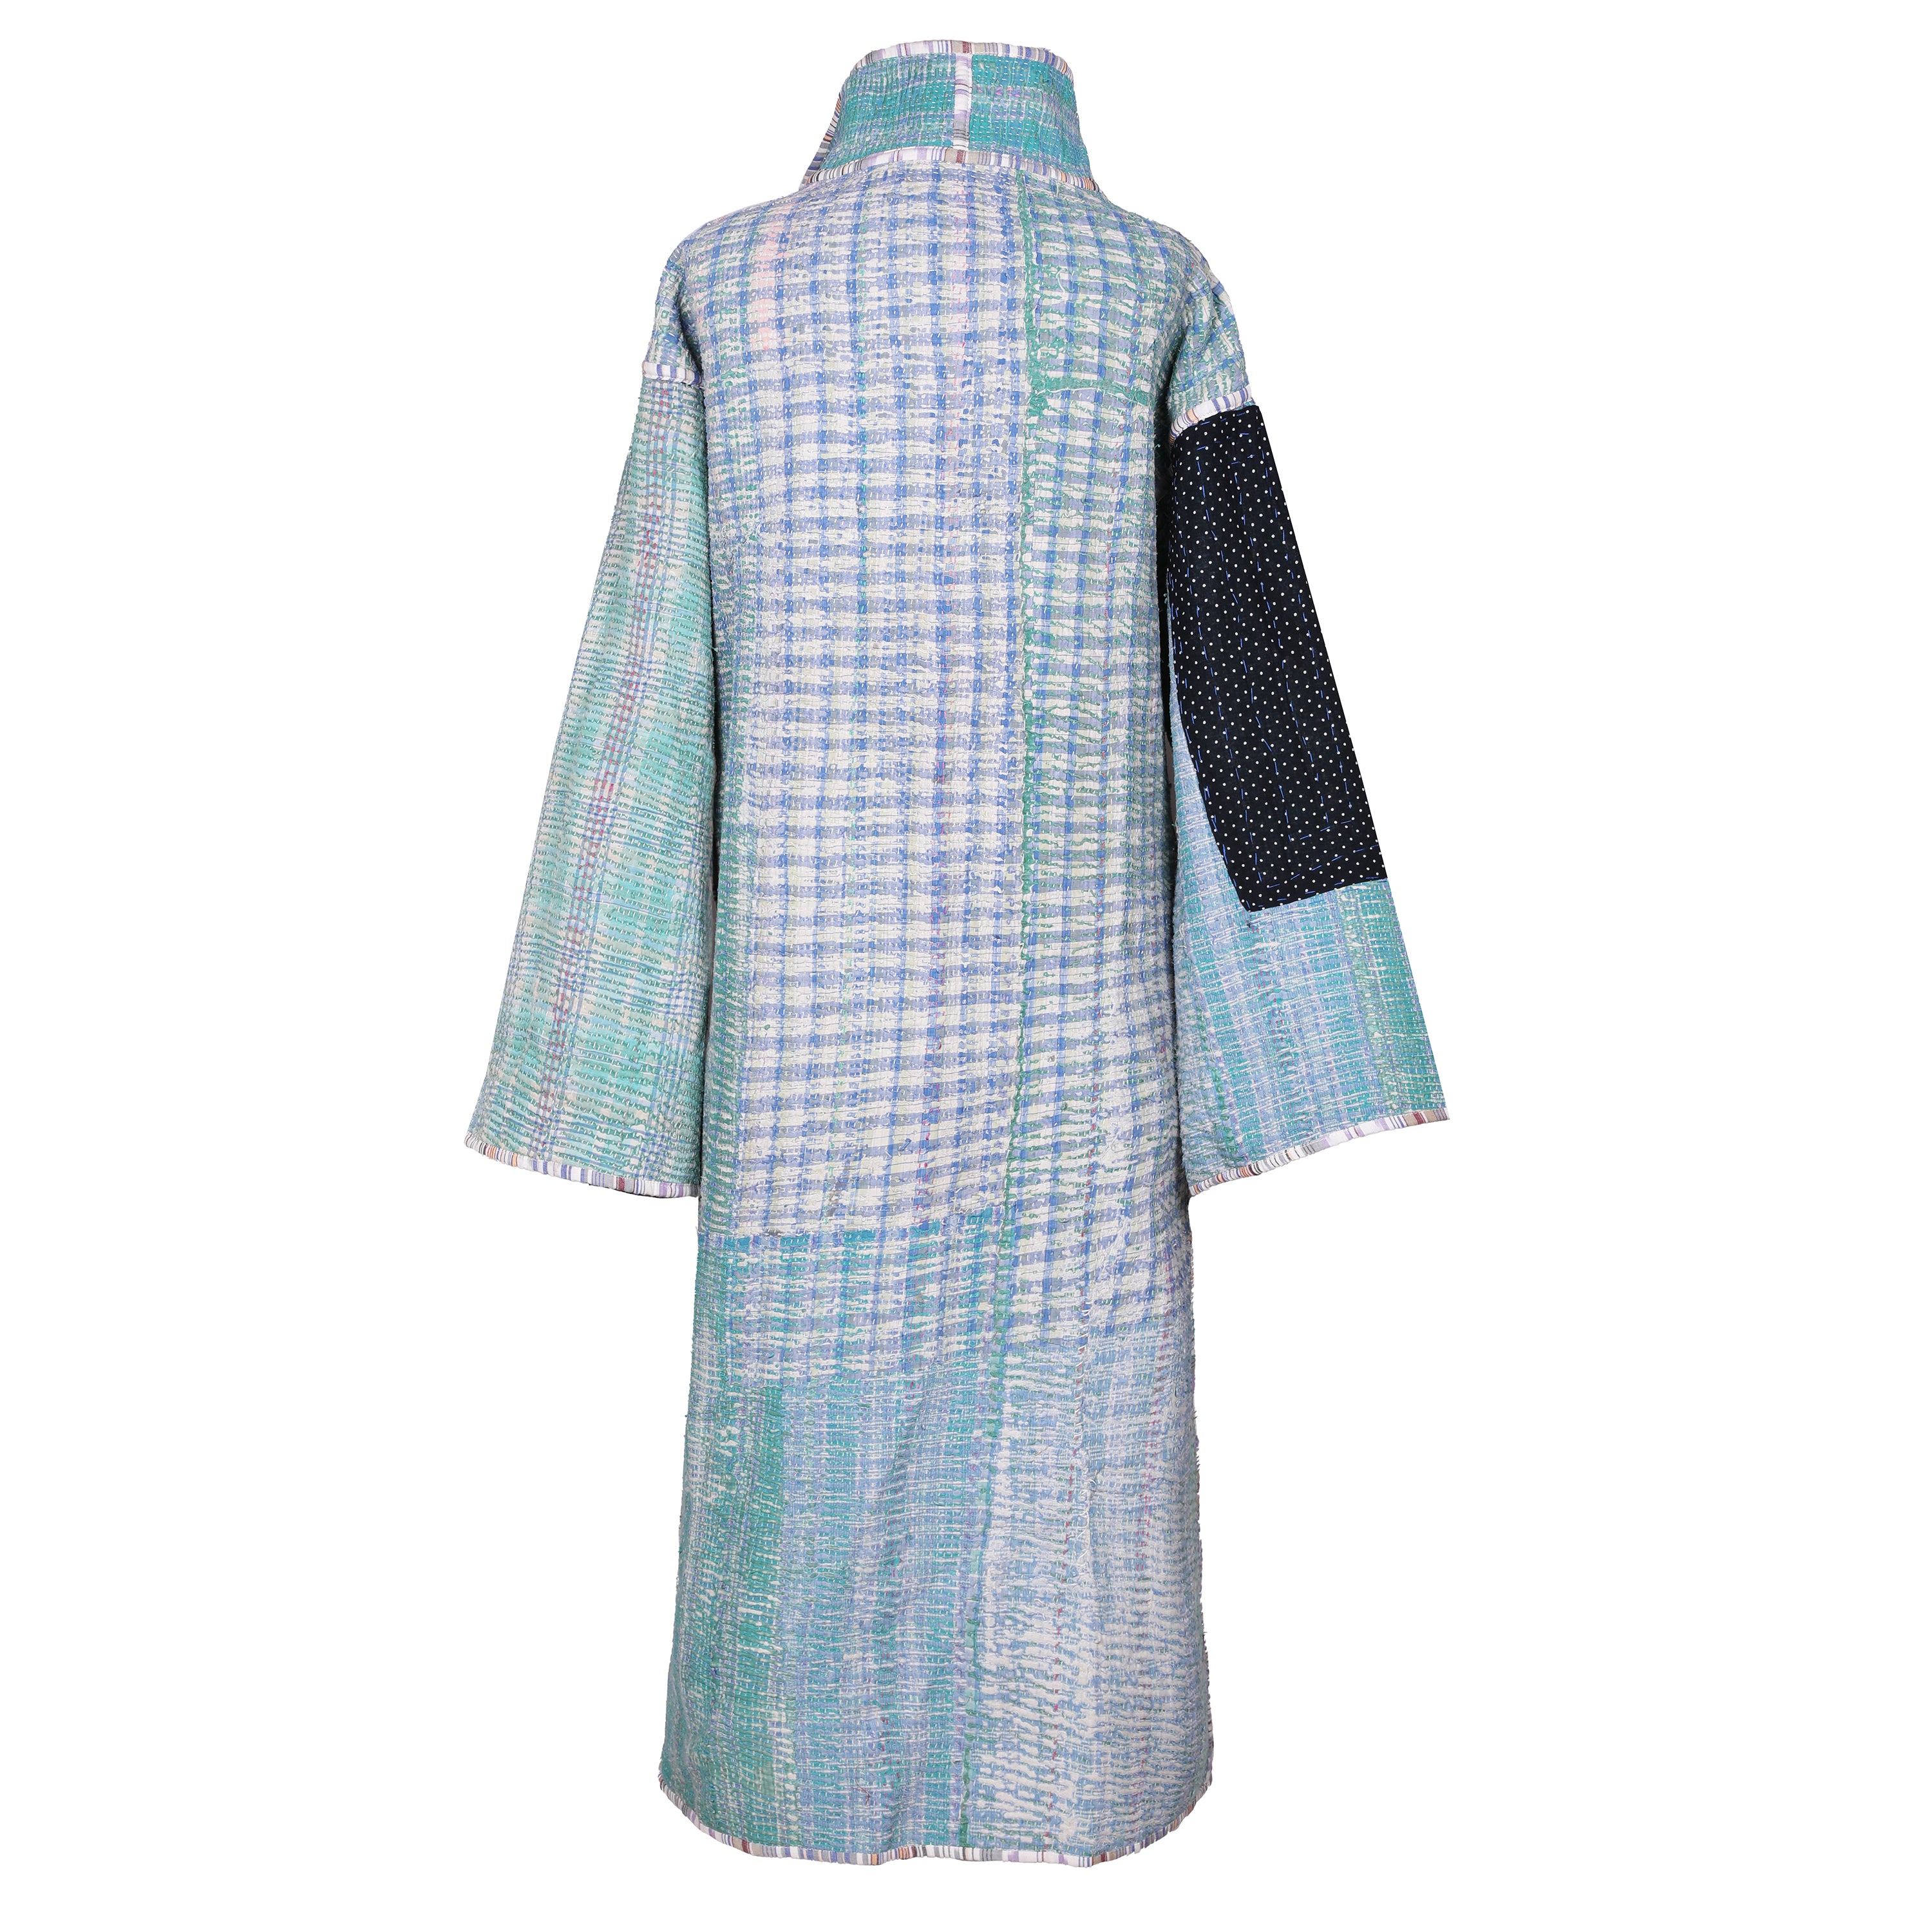 Leela Cotton Vintage Quilted Kantha Coat ONE OF KIND